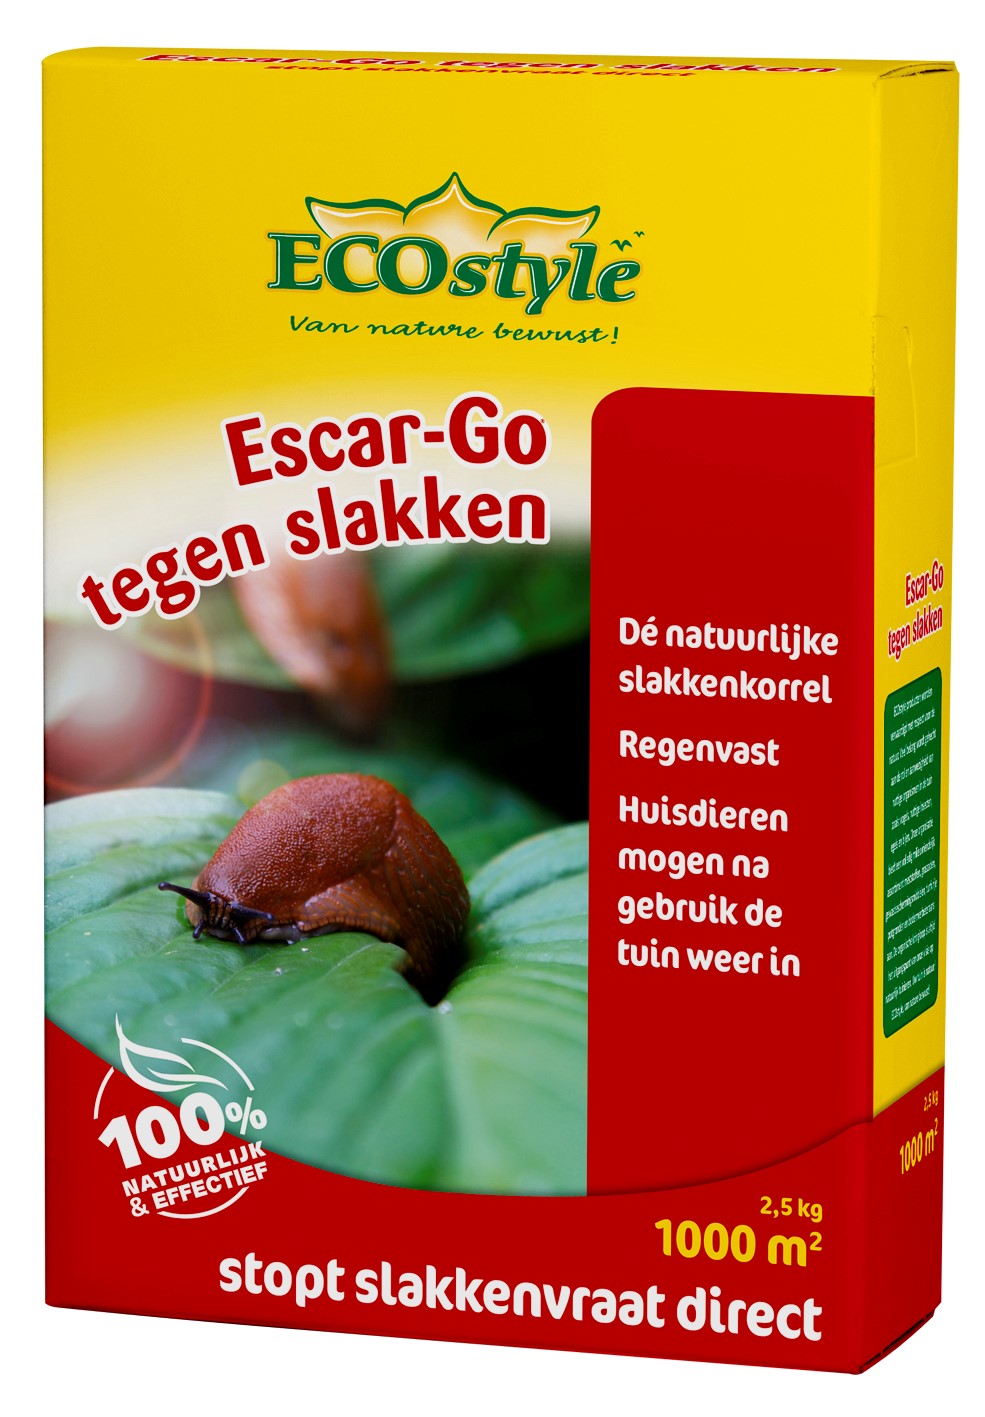 Afbeelding Escar Go 2 5 kg door Haxo.nl